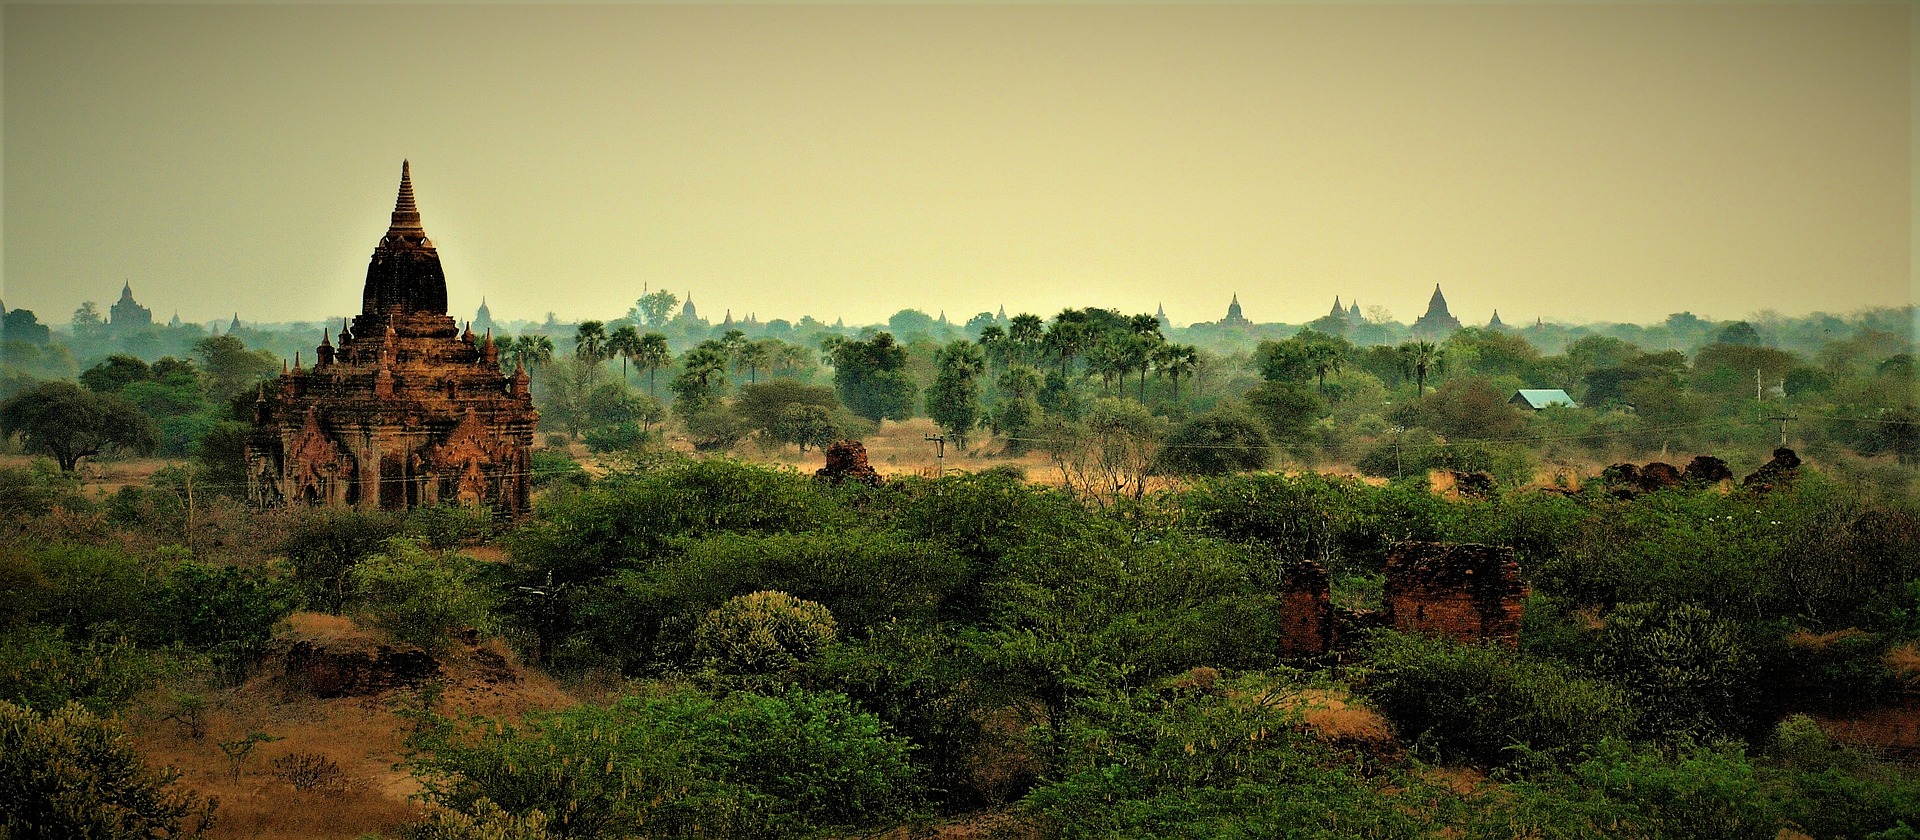 Bagan imagenes